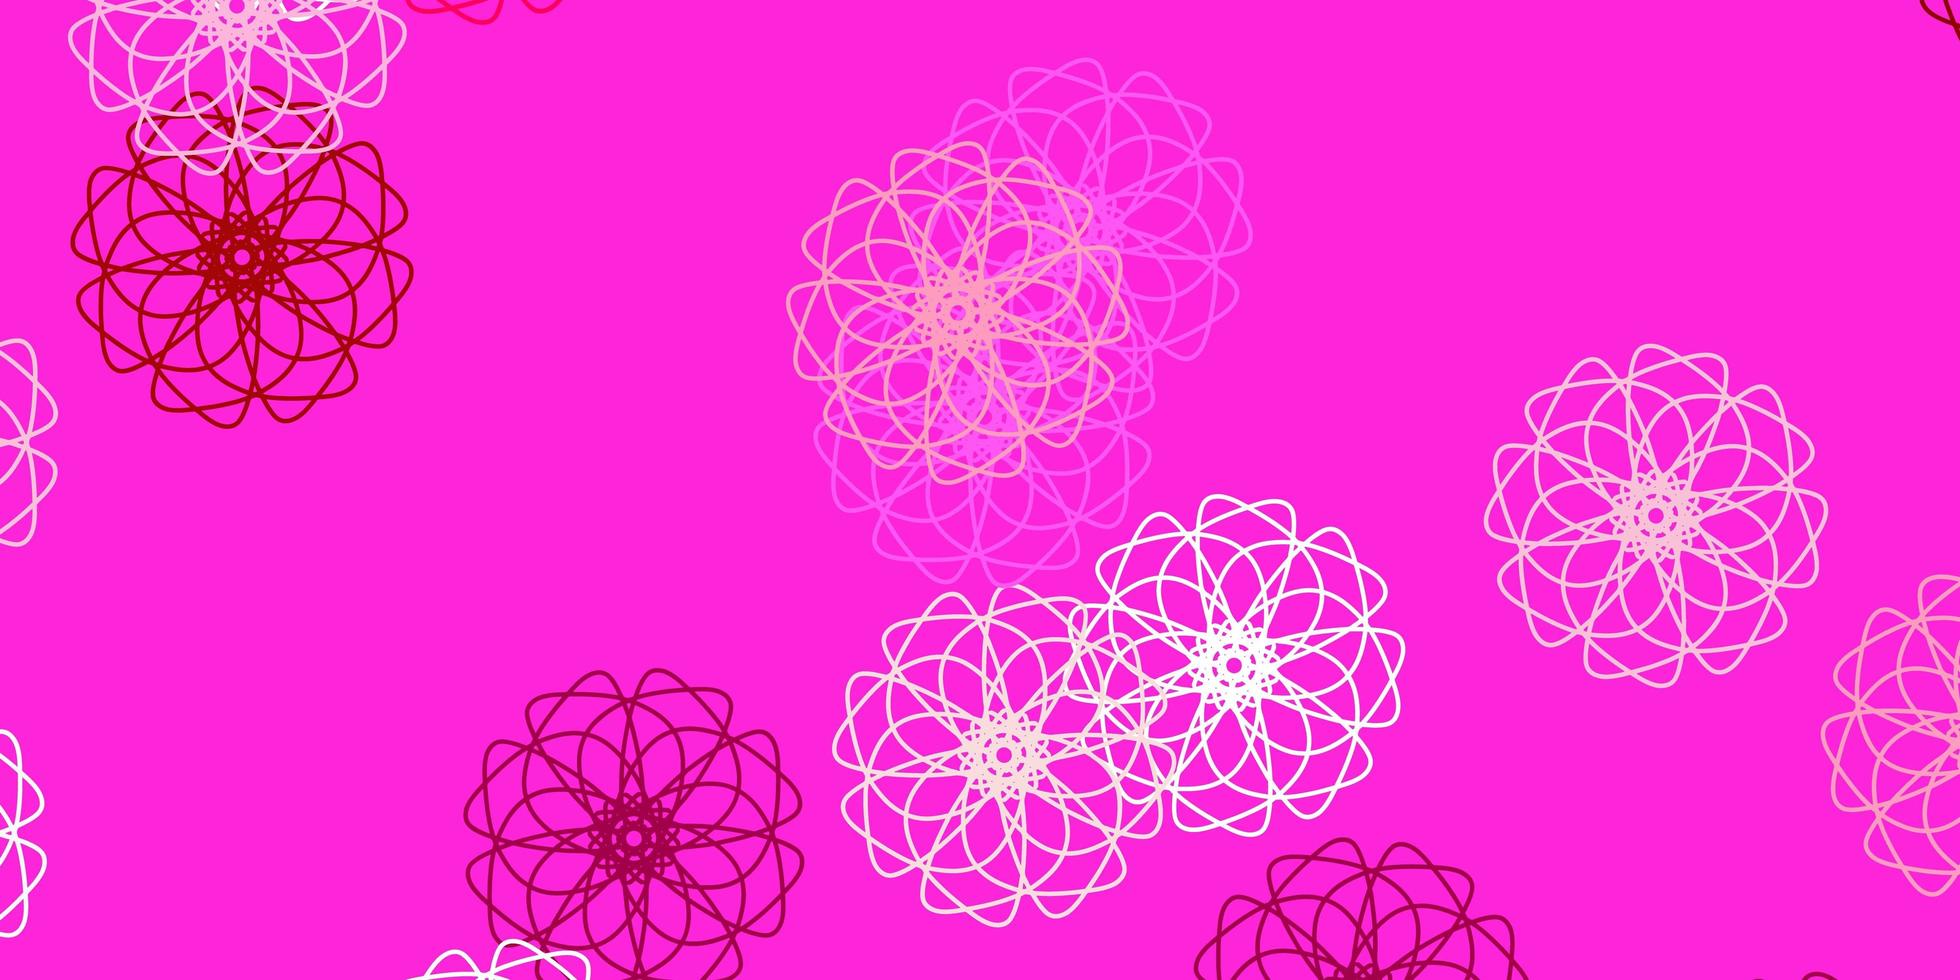 struttura di doodle di vettore rosa chiaro con fiori.